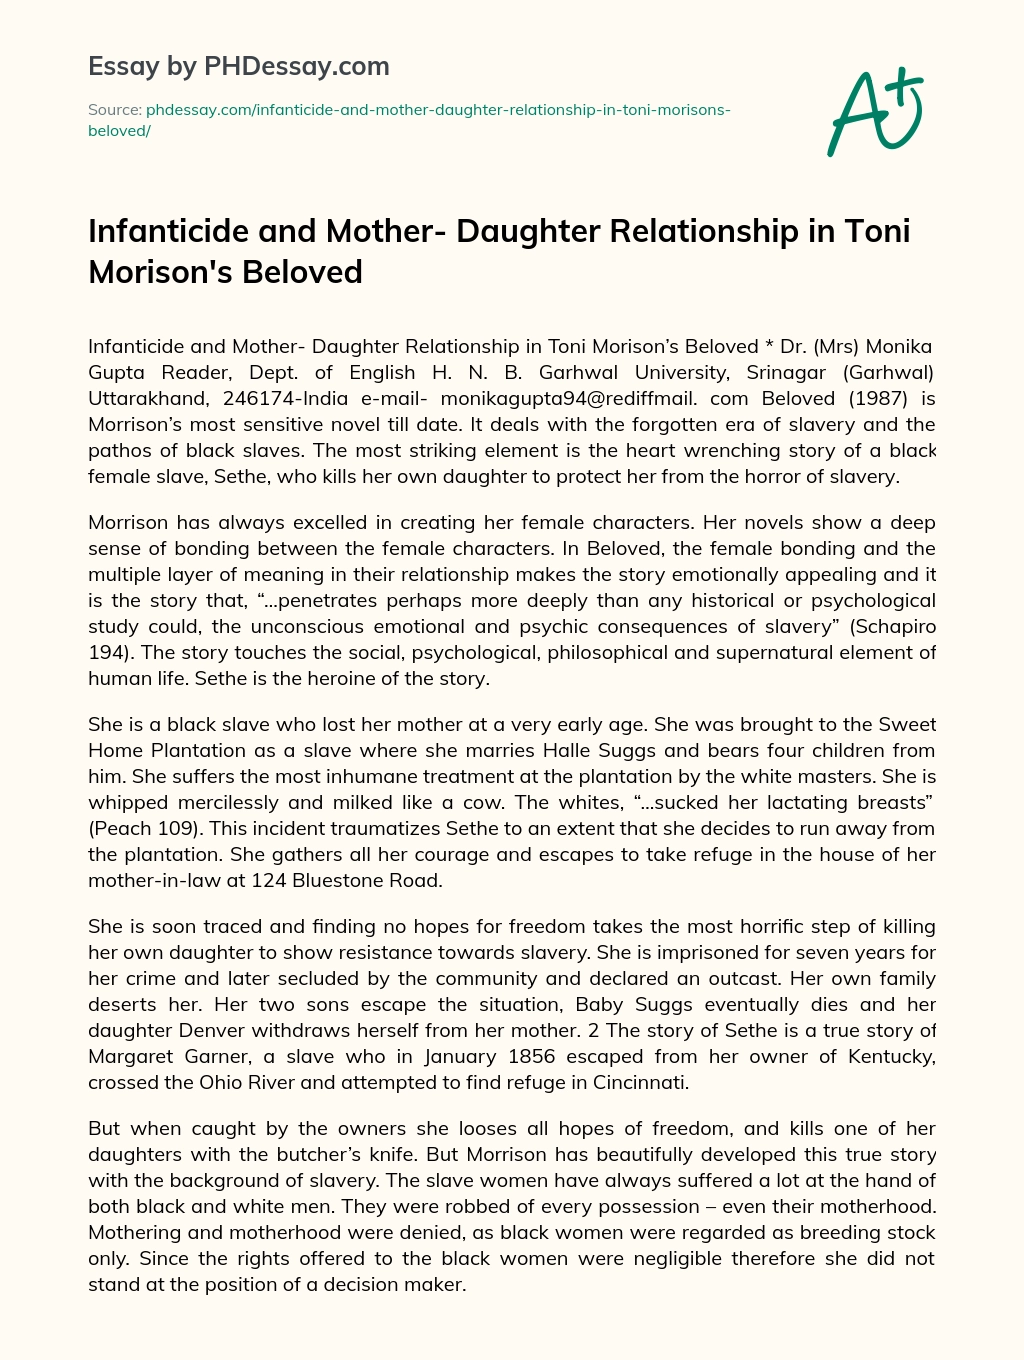 Infanticide and Mother- Daughter Relationship in Toni Morison’s Beloved essay